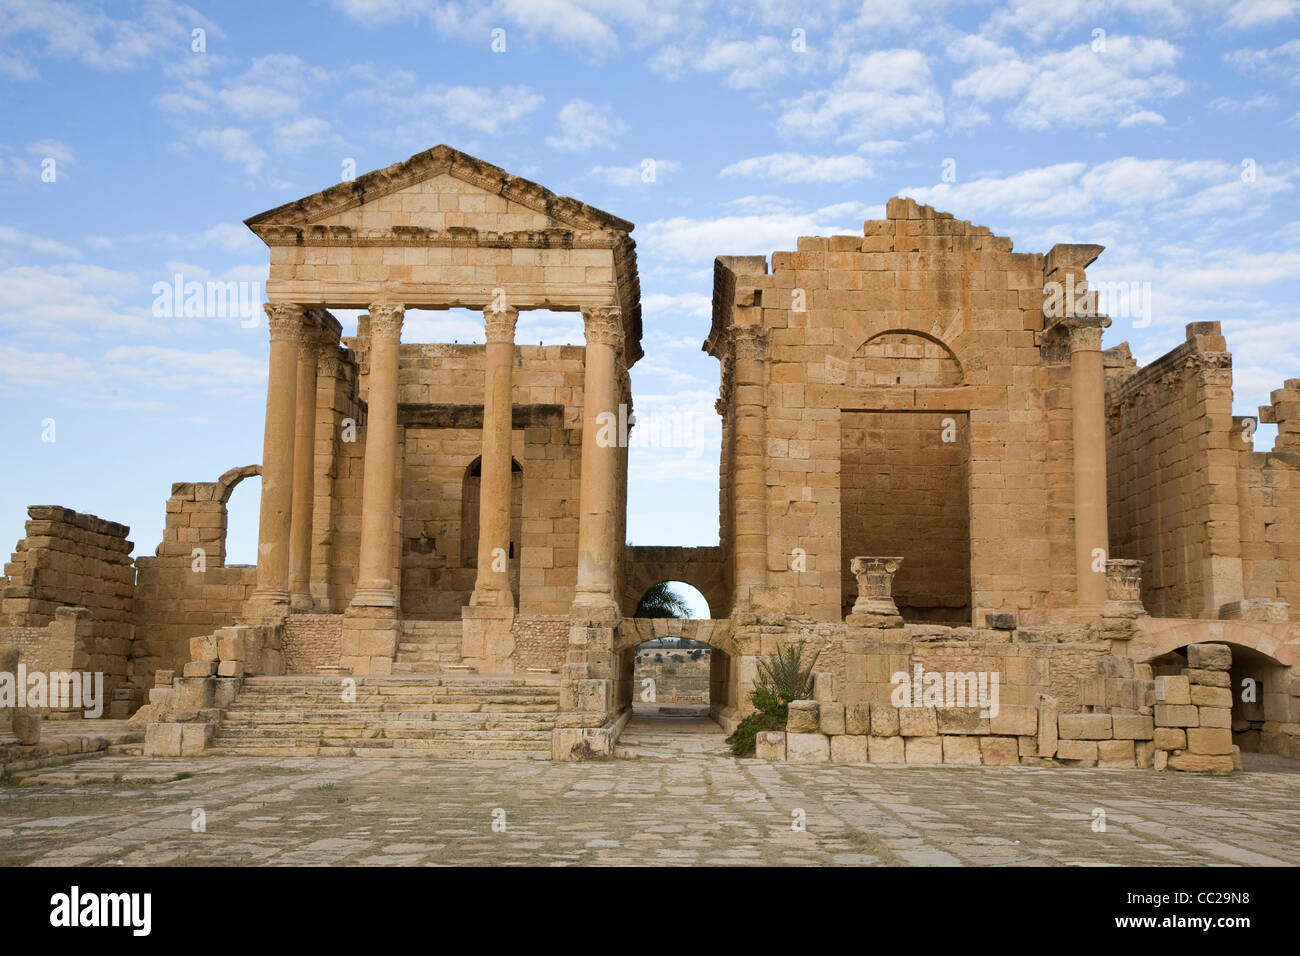 Roman temples at Sufetula, Tunisia. Stock Photo